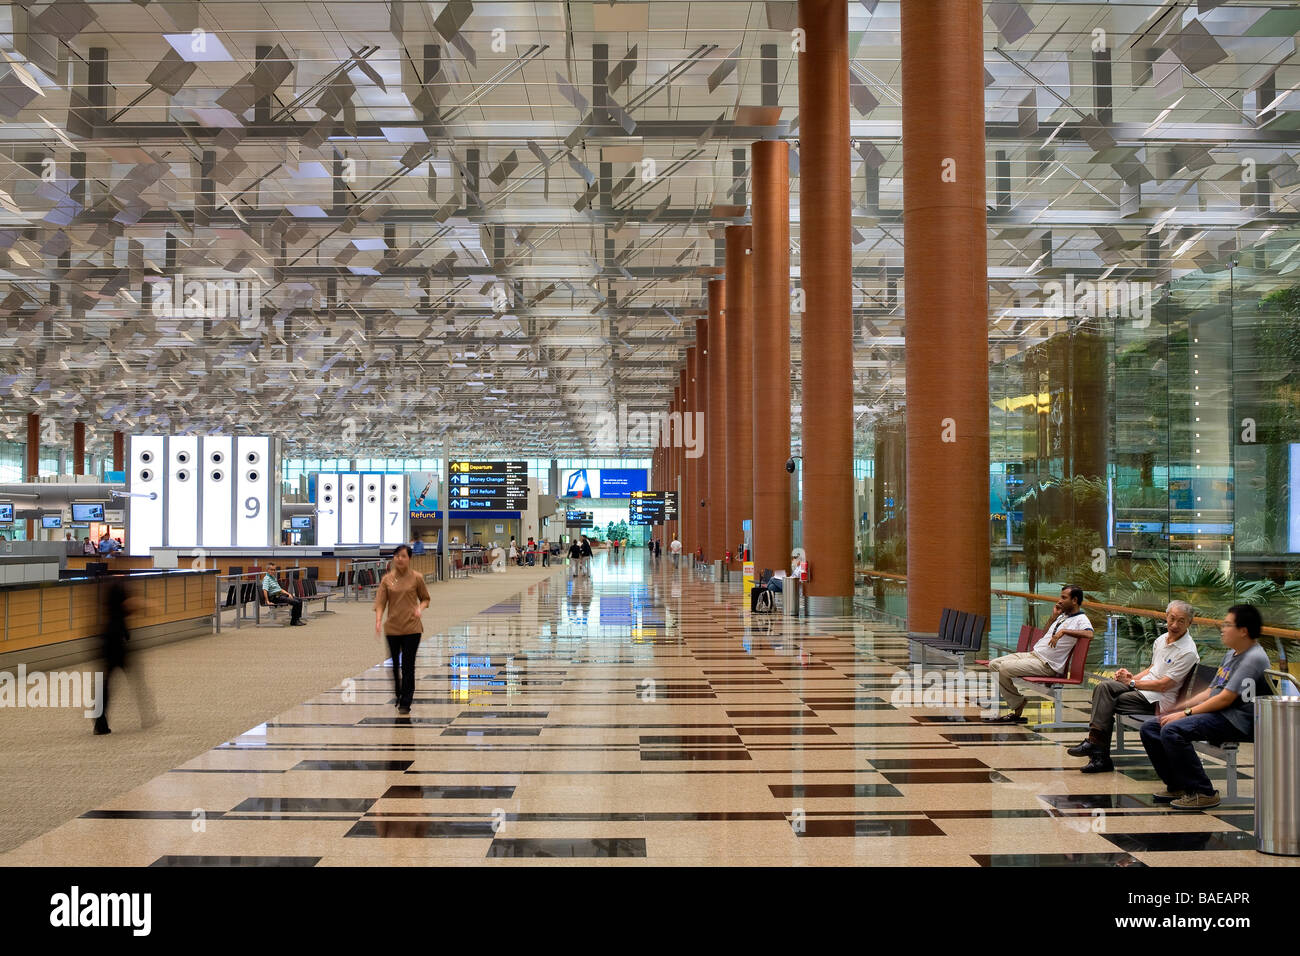 Singapore, Changi Airport Terminal 3, recording area Stock Photo